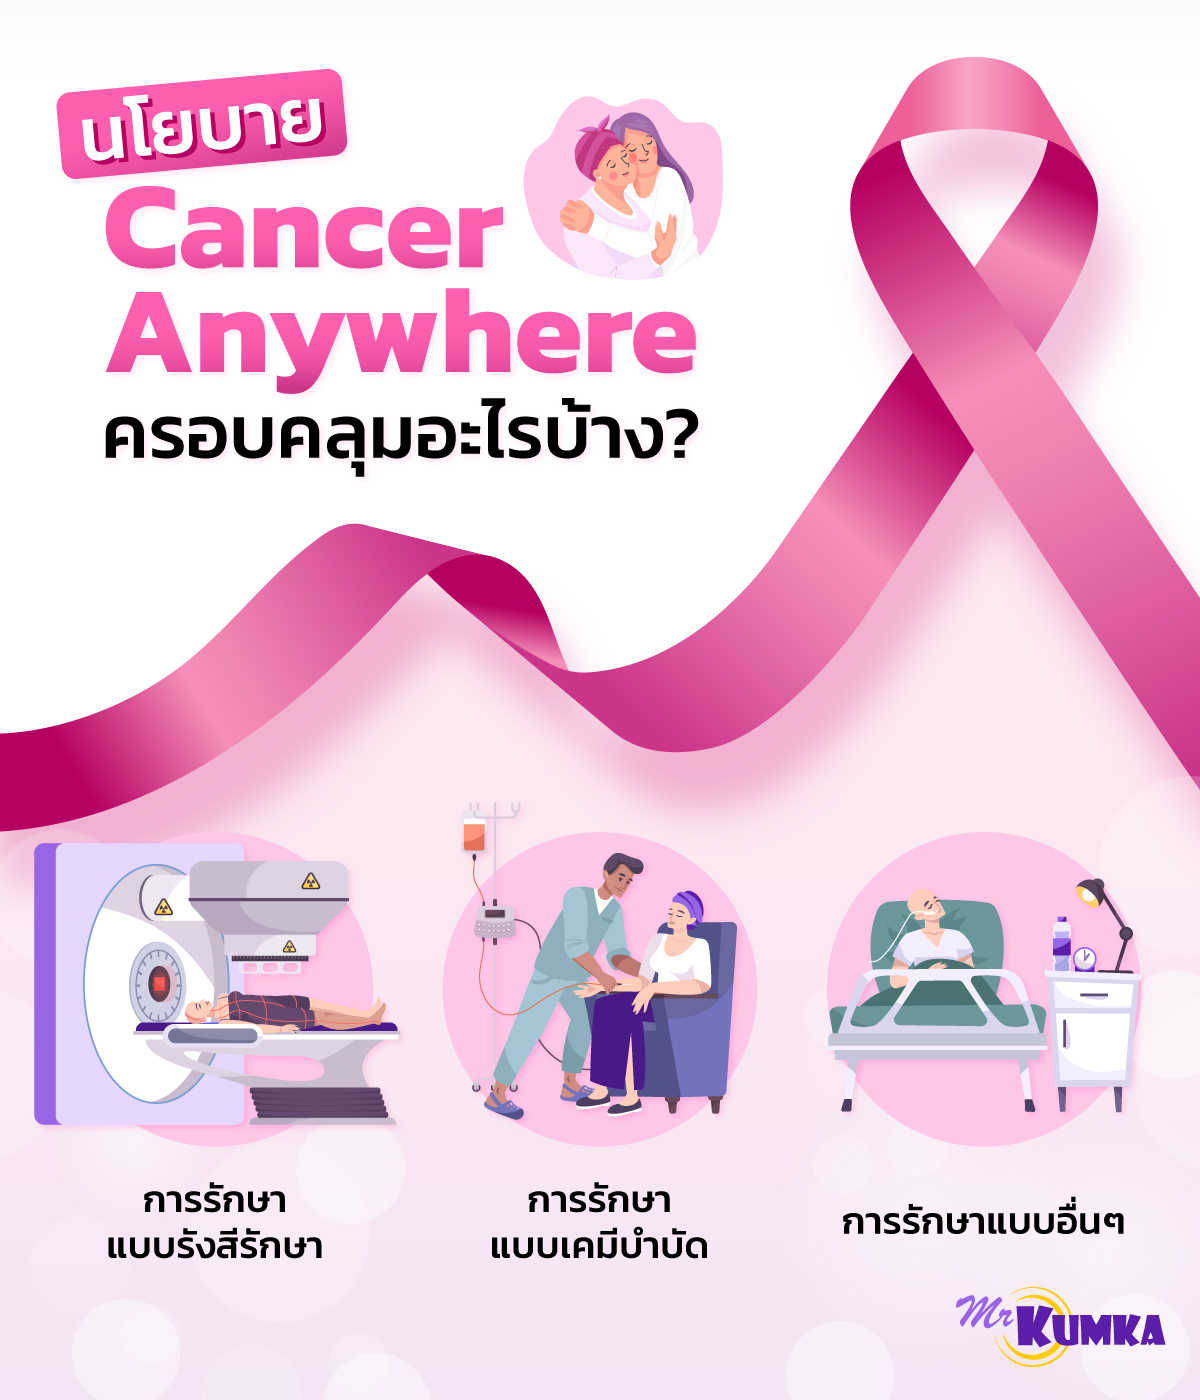 ขั้นตอนการรับบริการ Cancer Anywhere | MrKumka.com